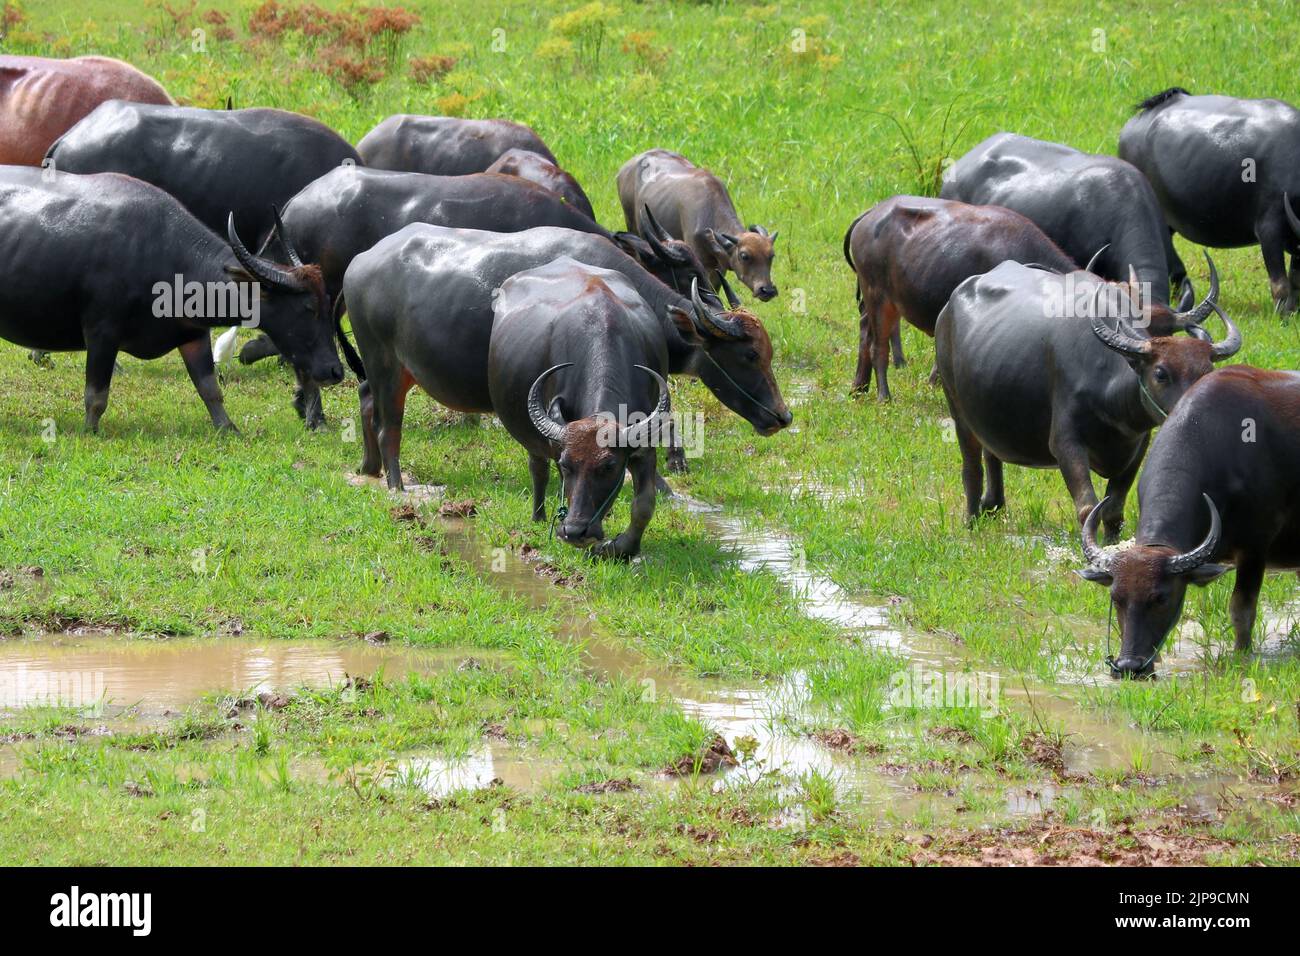 asian water buffalo or bubalus bubalis in paddock Stock Photo